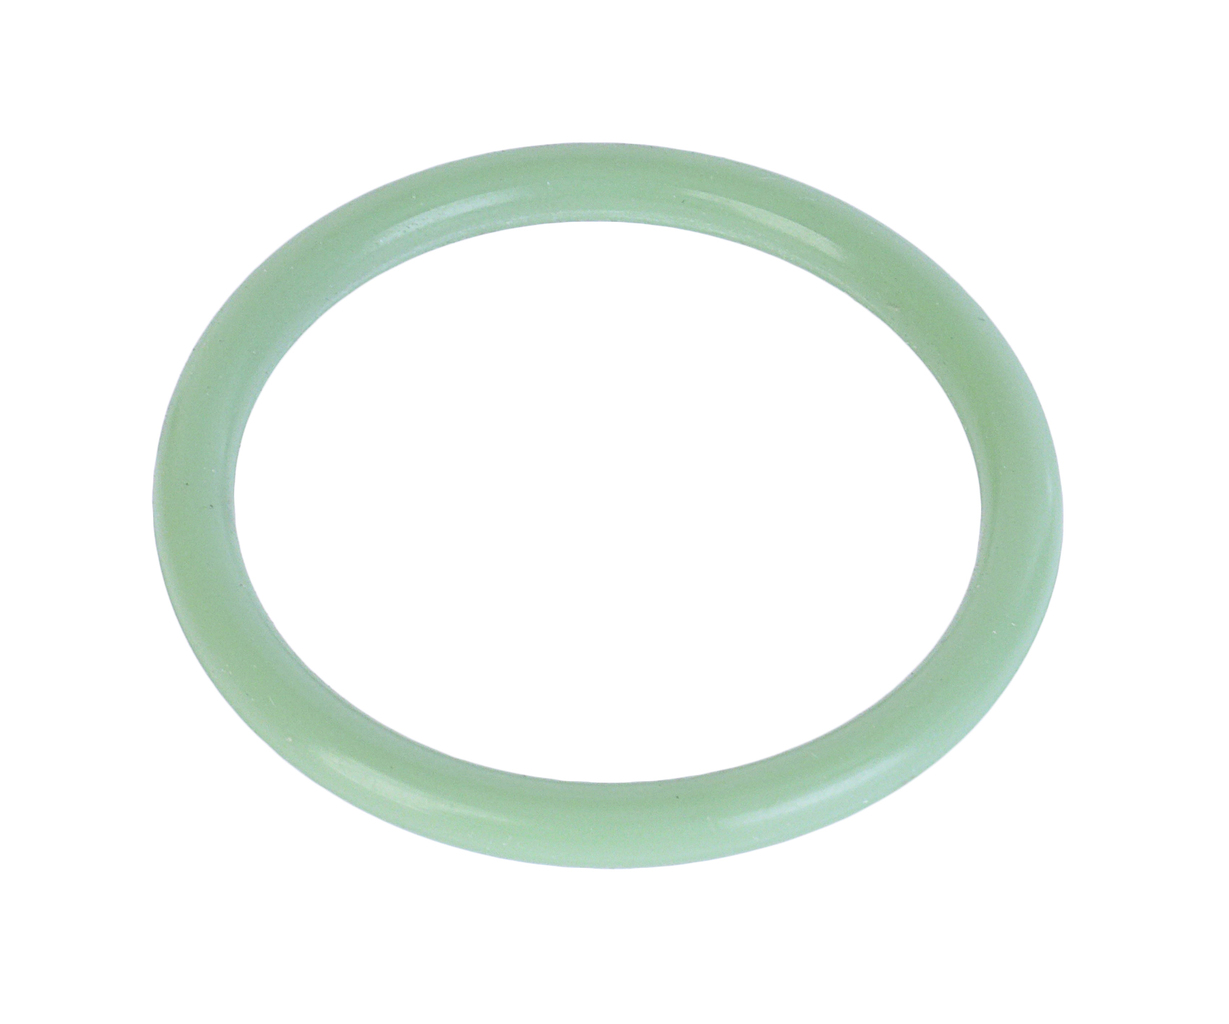 Кольцо ЯМЗ-650.10 фланца трубы подводящей зеленое силикон РД, 650.1303248, РУССКИЙ ДВИГАТЕЛЬ